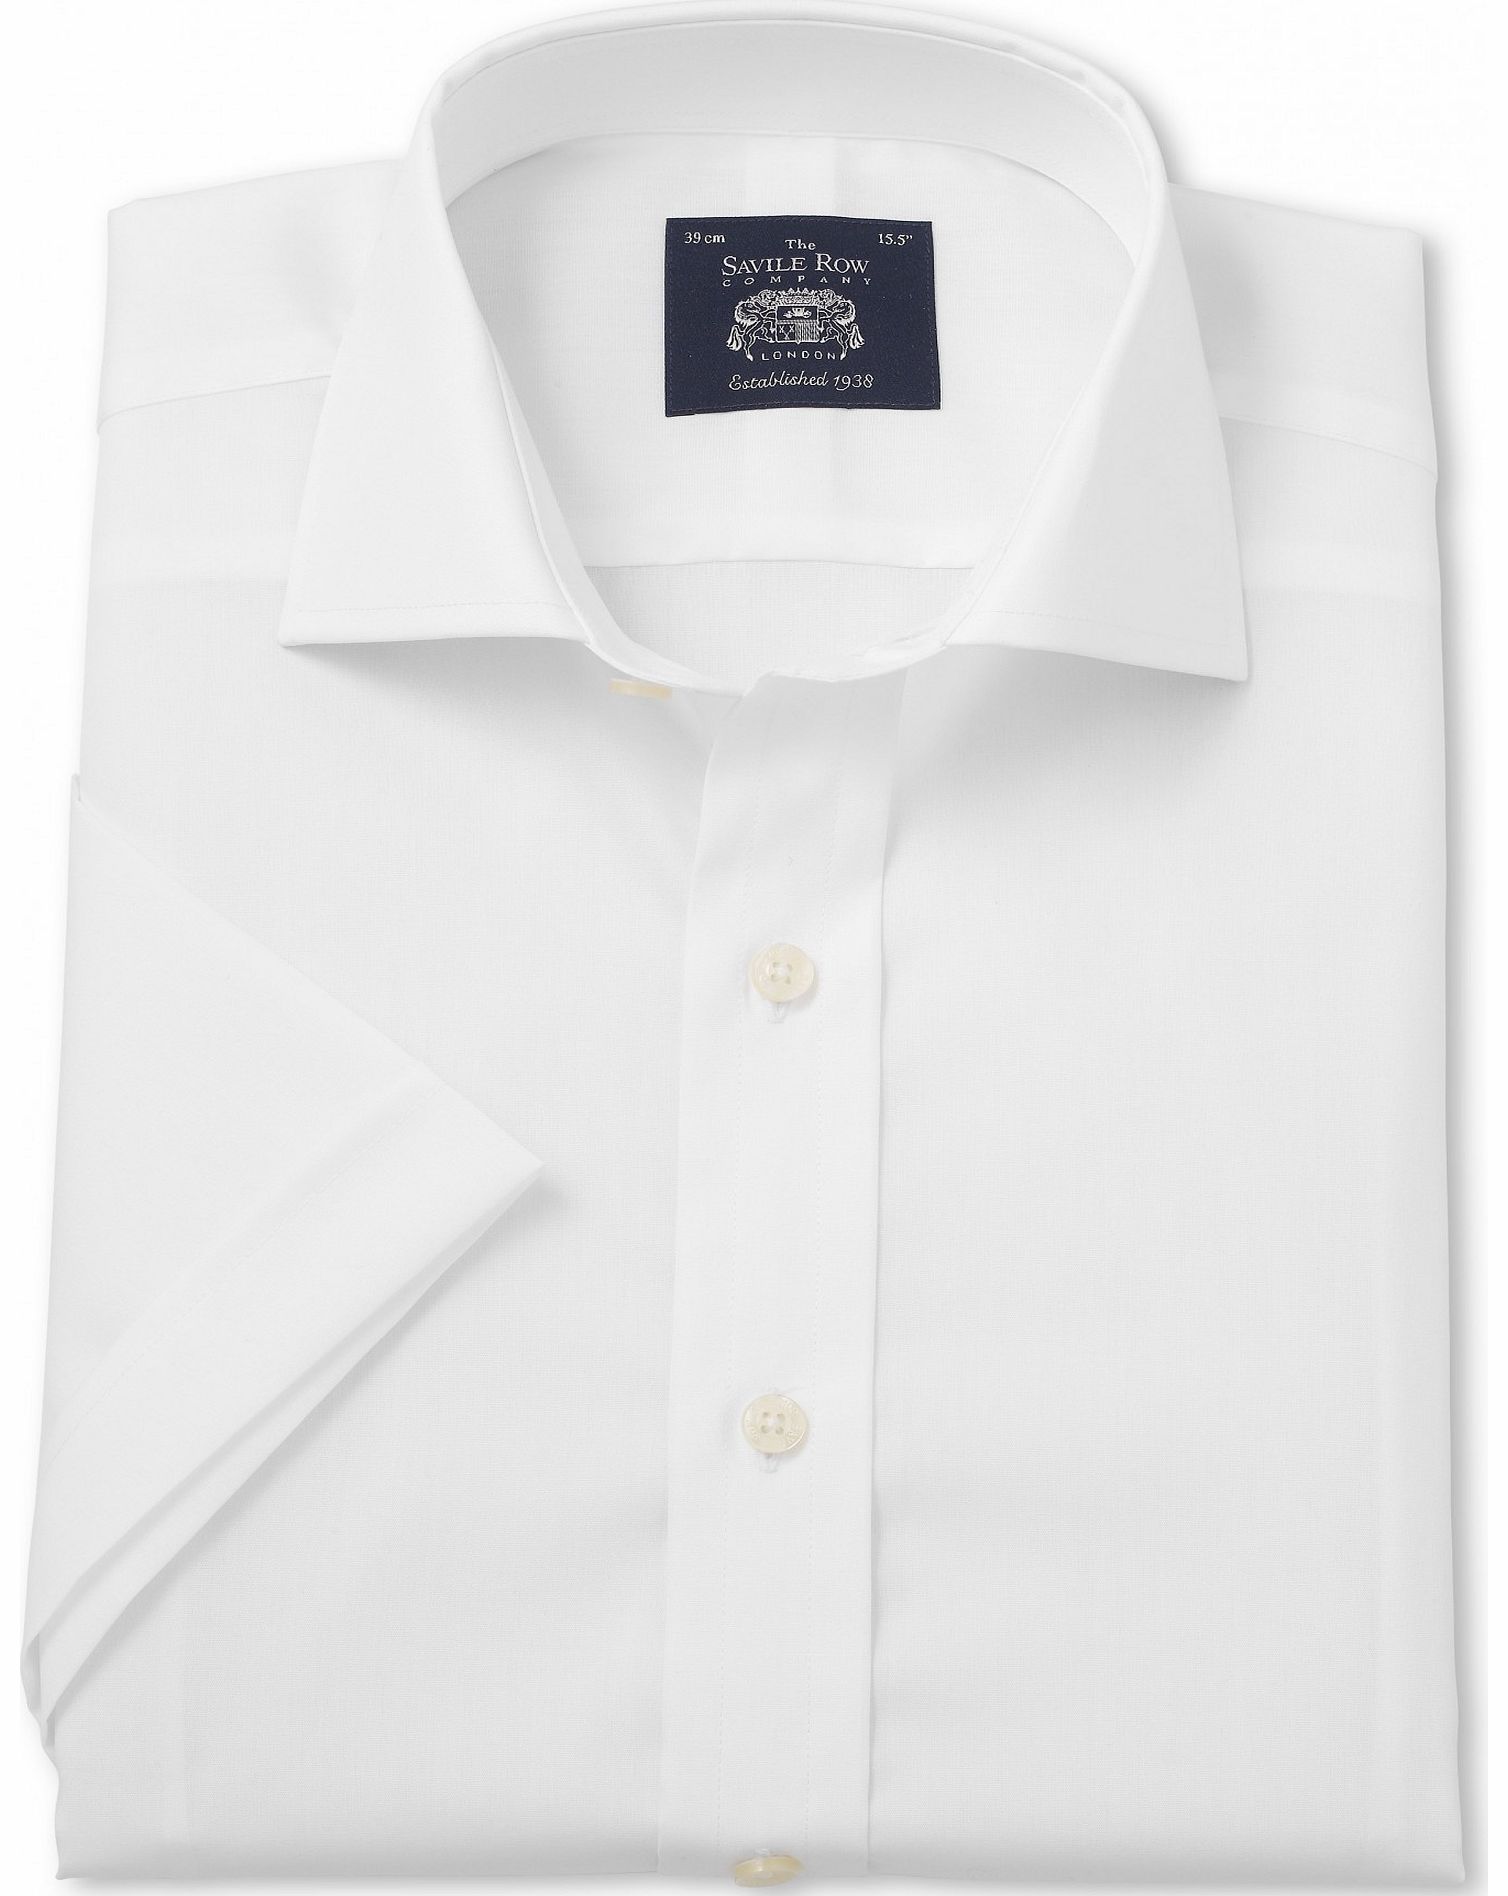 White Slim Fit Short Sleeve Shirt 16`` Short